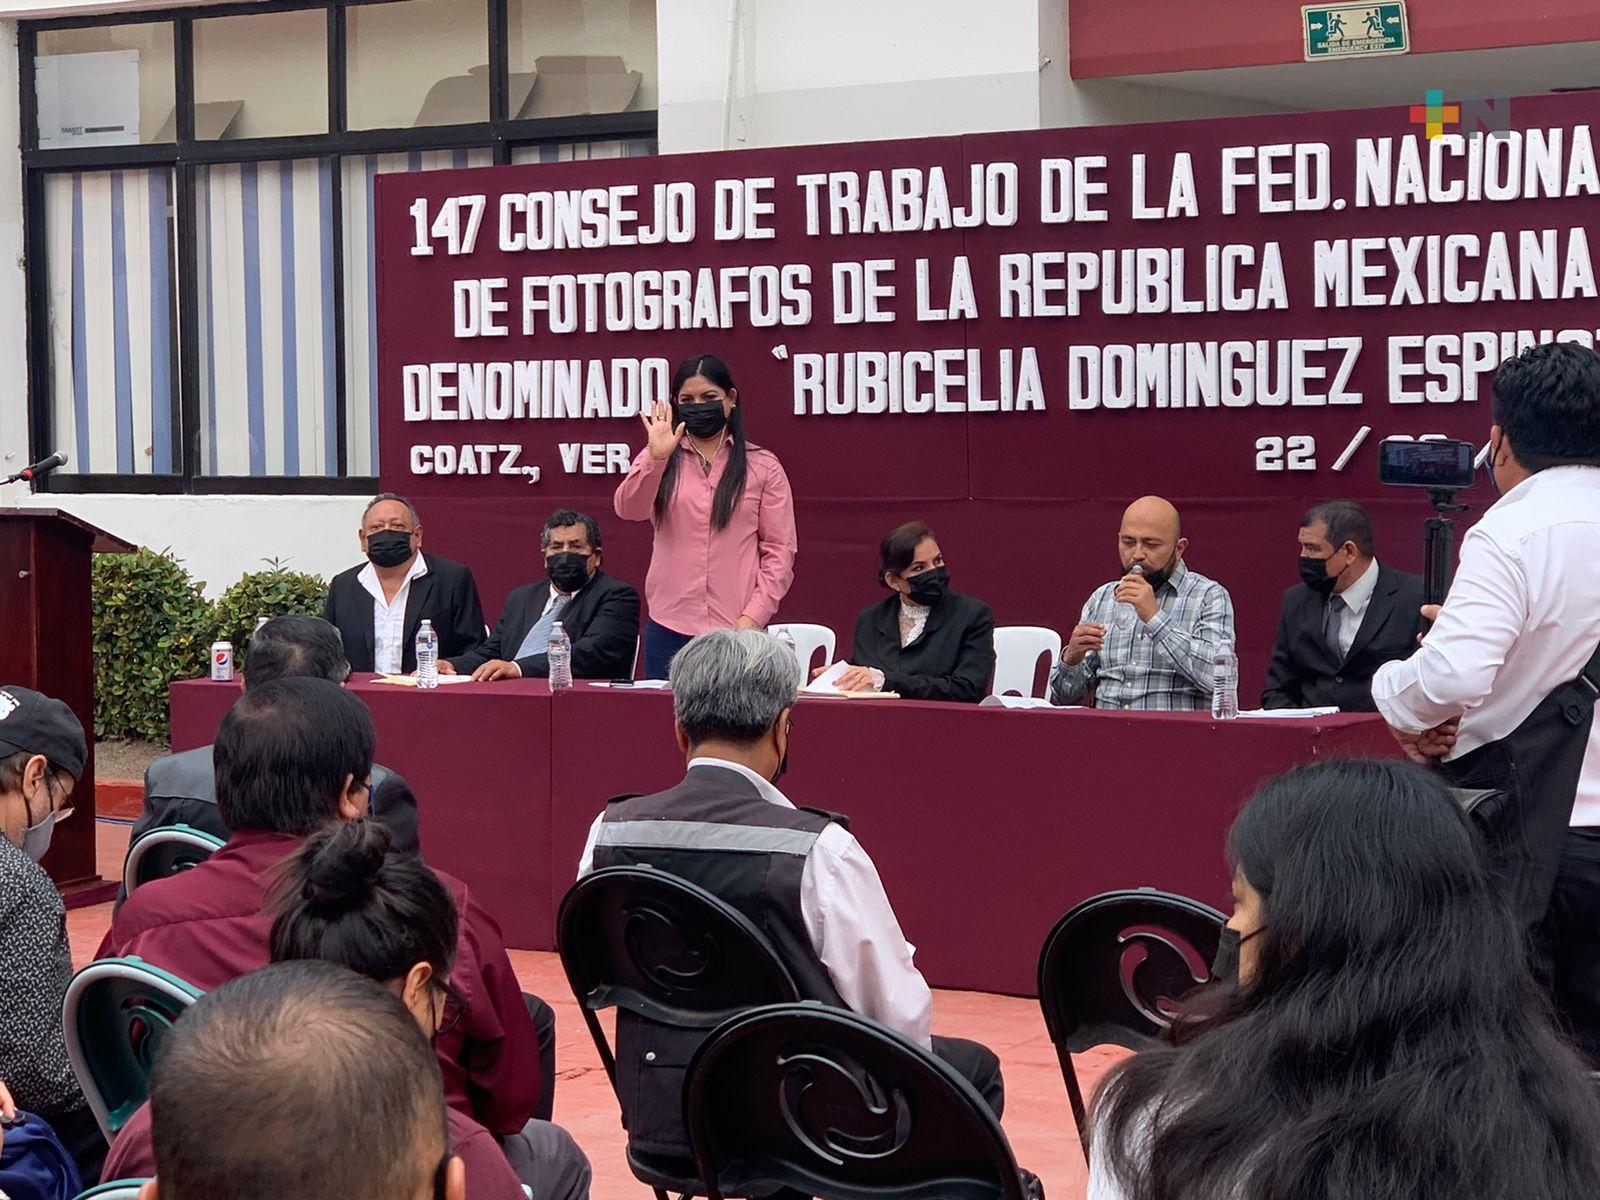 Celebran consejo de trabajo fotógrafos de la república mexicana en Coatzacoalcos